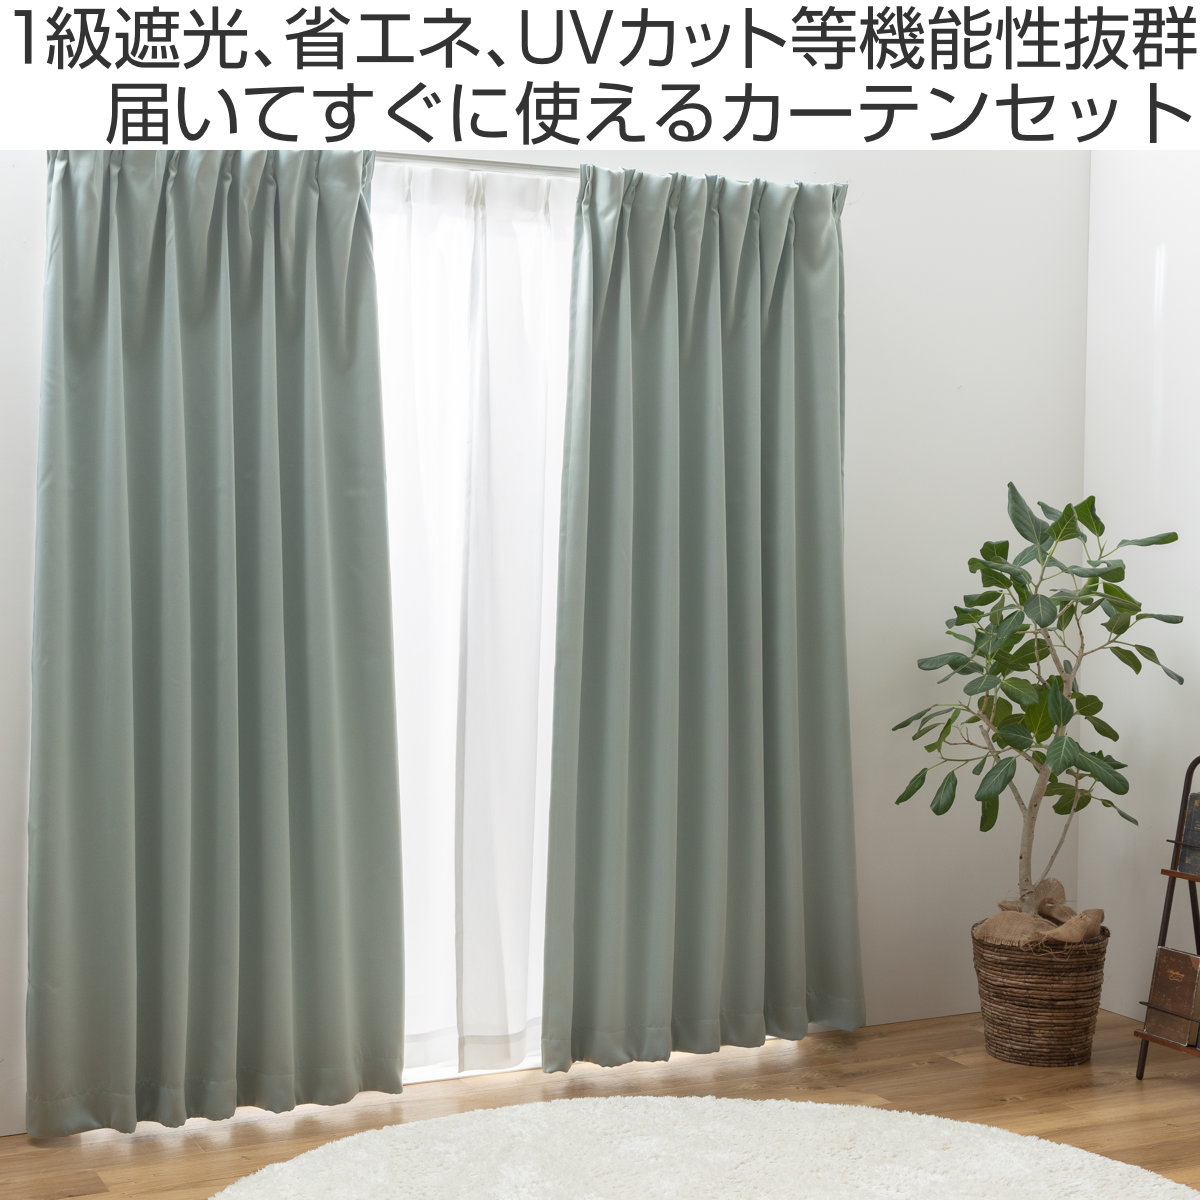 品質保証得価ドレープカーテン (幅150cm×高さ210cm)の2枚セット 色-レッド /無地 シンプル 国産 日本製 1級遮光 防炎 遮熱 洗濯機で洗える 幅150cm用